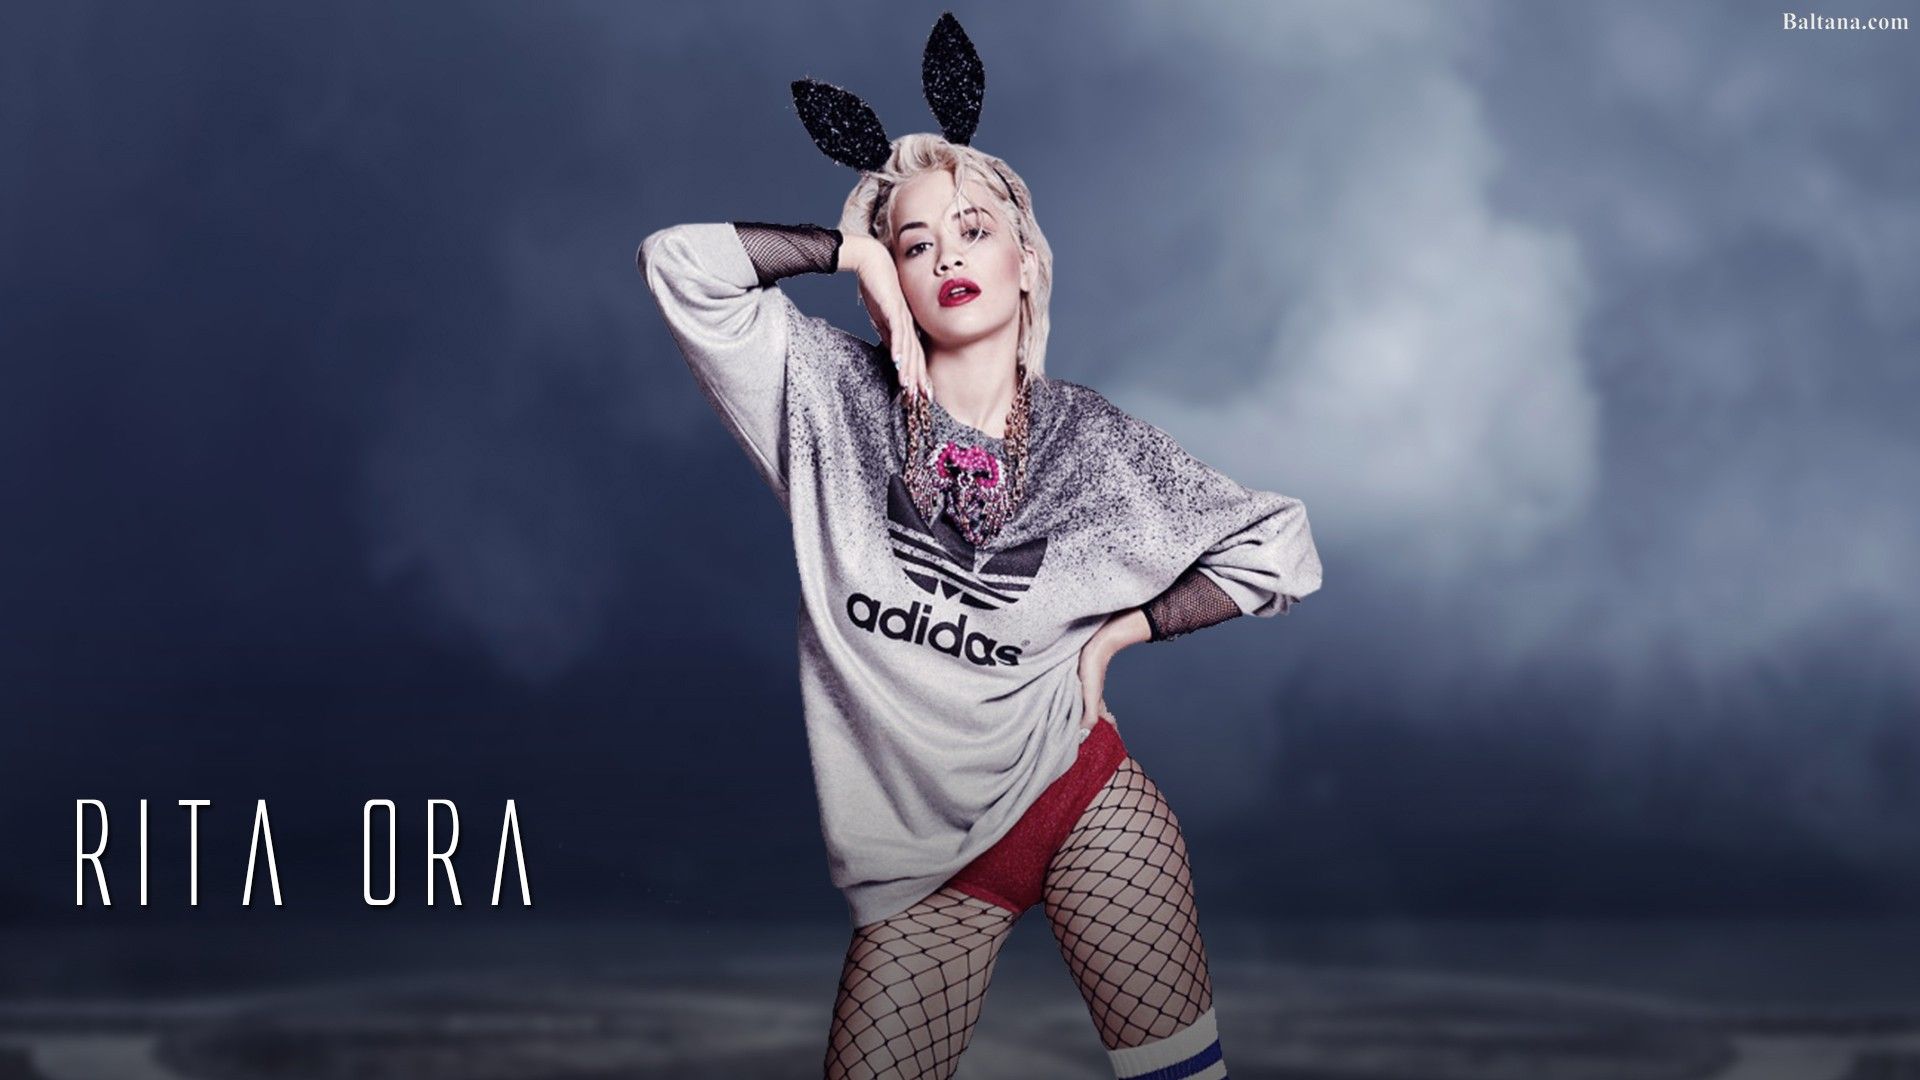 Rita Ora Wallpaper Free Rita Ora Background